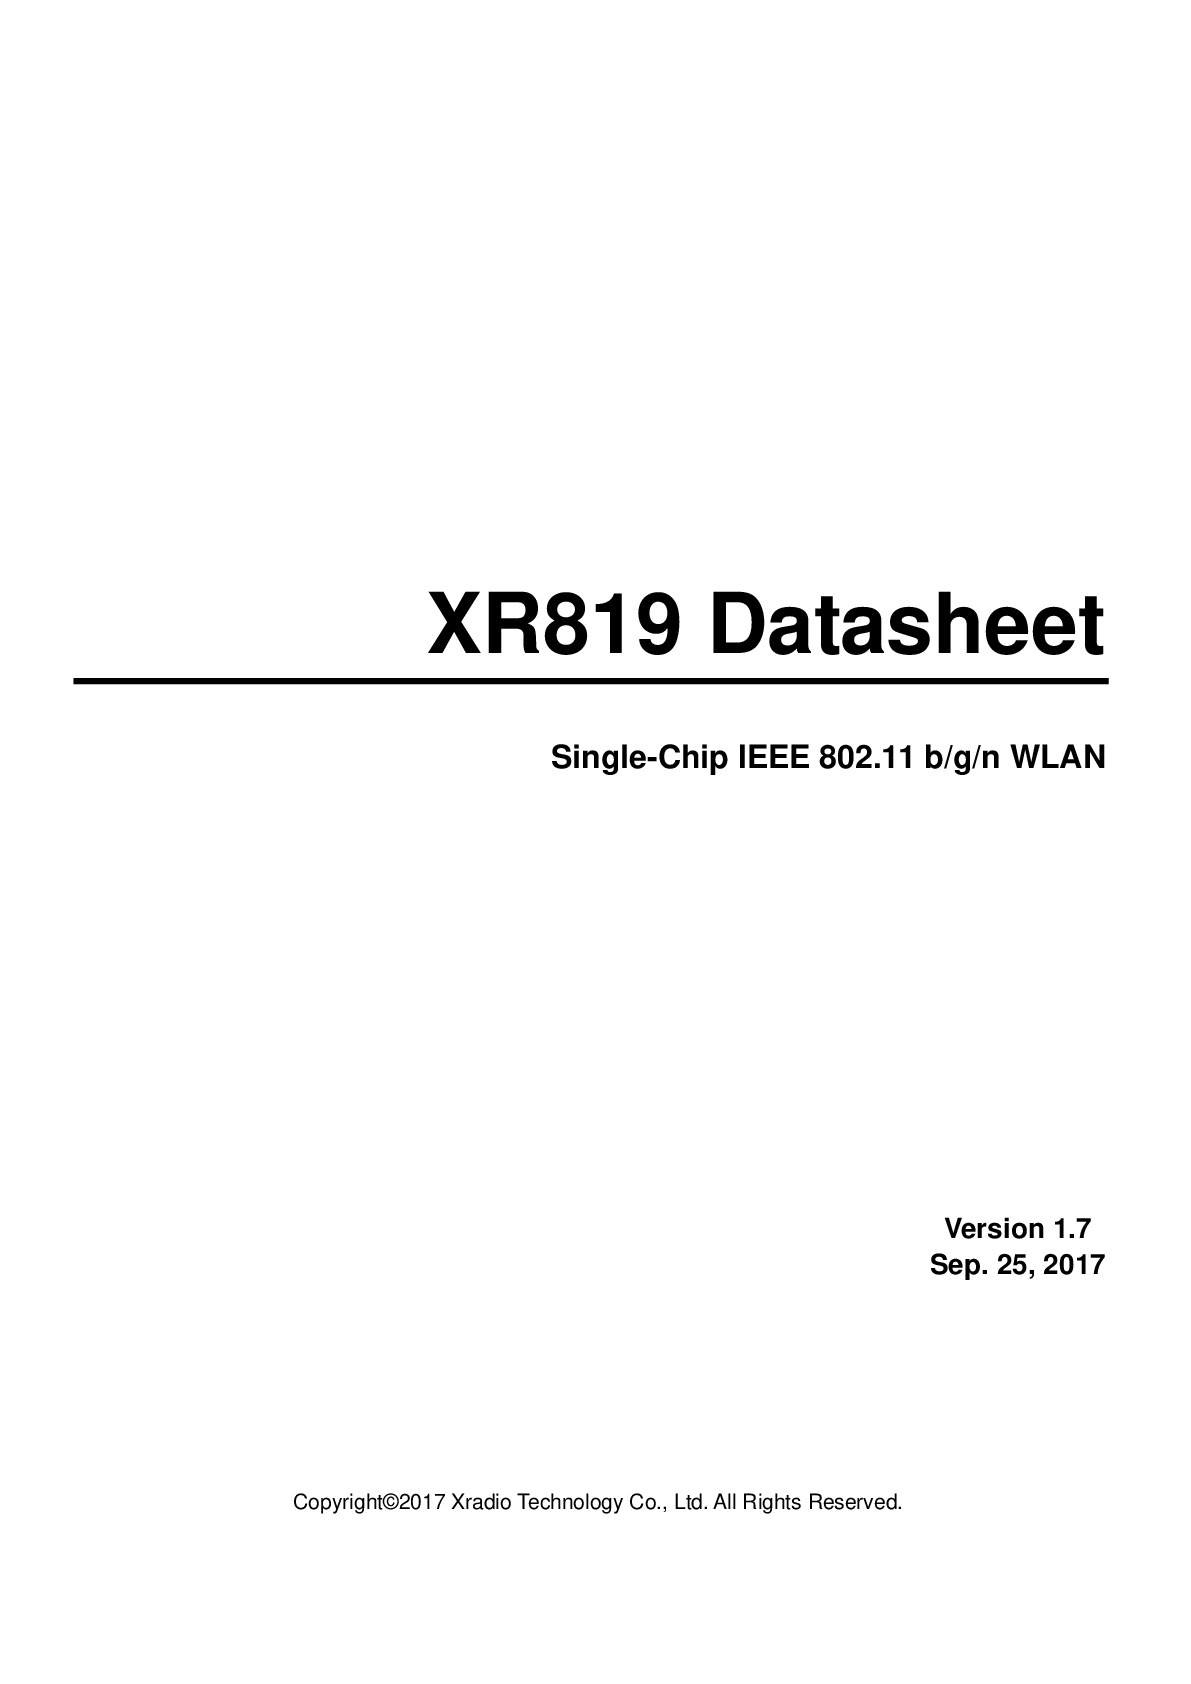 XR819_Datasheet_V1.7